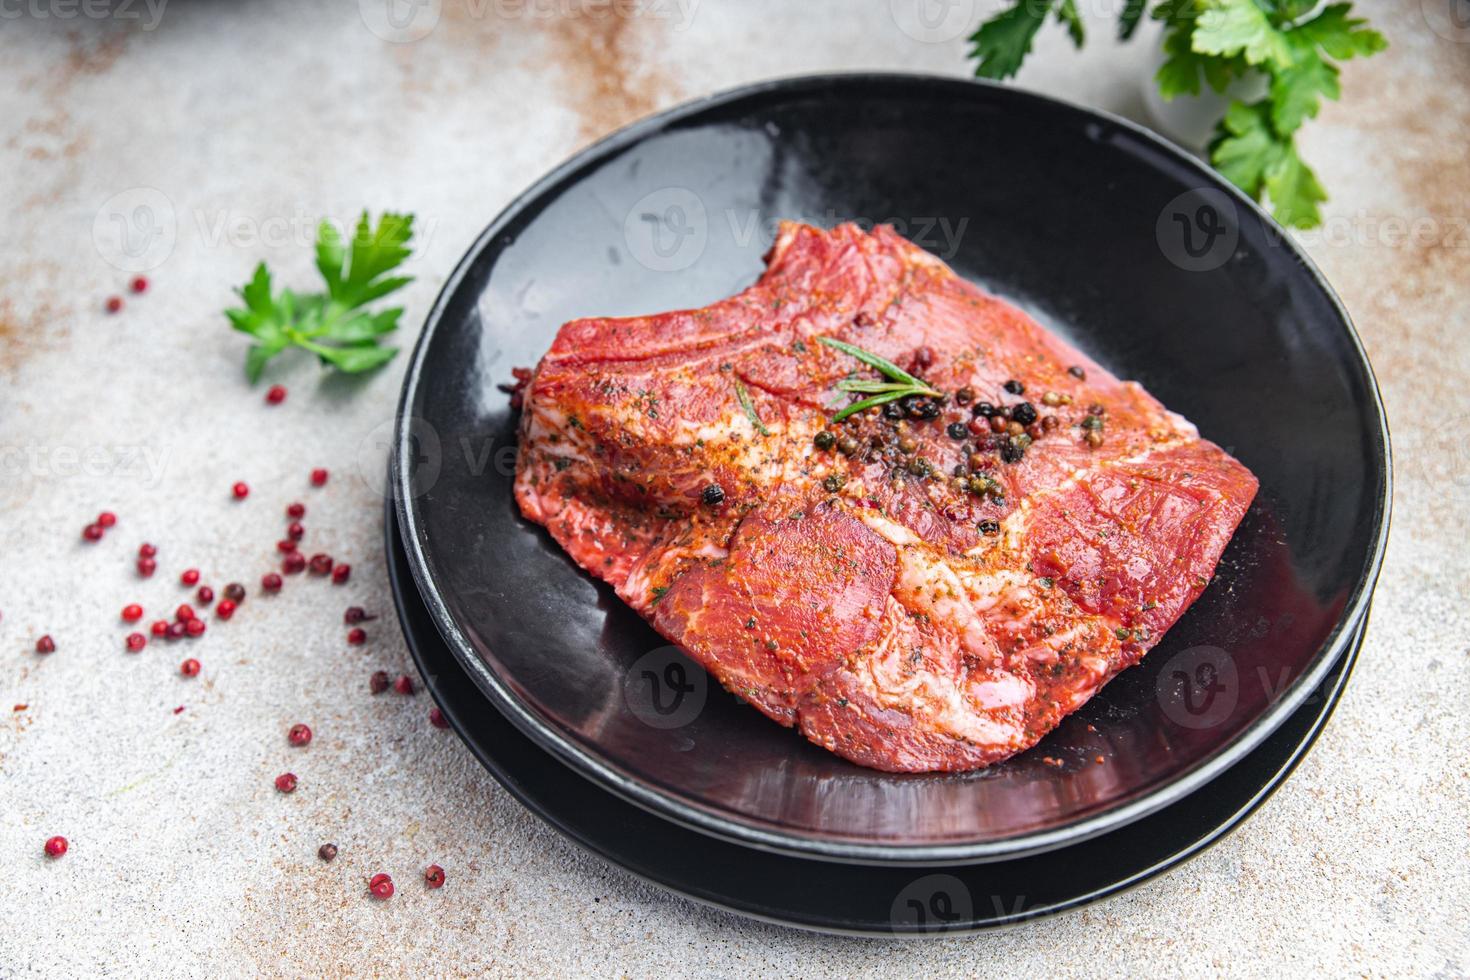 Steak rohes Fleisch Schweinefleisch frisches Rindfleisch Essen Snack auf dem Tisch kopieren foto